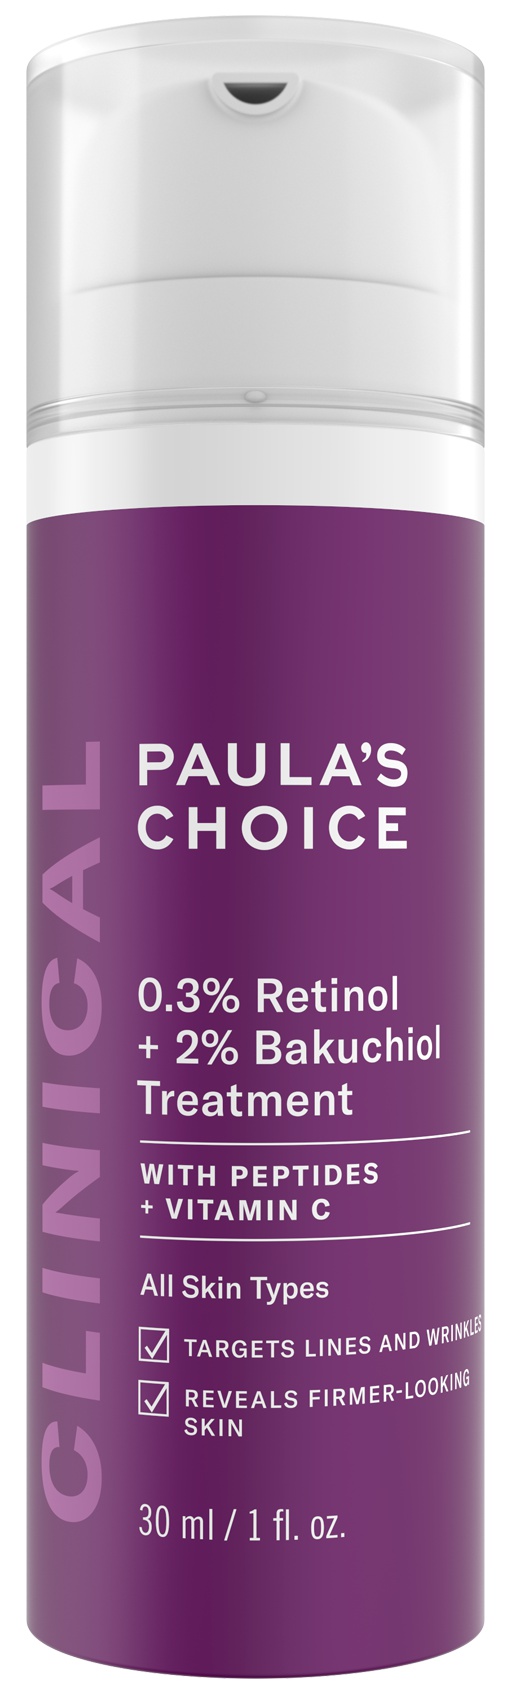 Paula's Choice Clinical 0.3% Retinol + 2% Bakuchiol Treatment